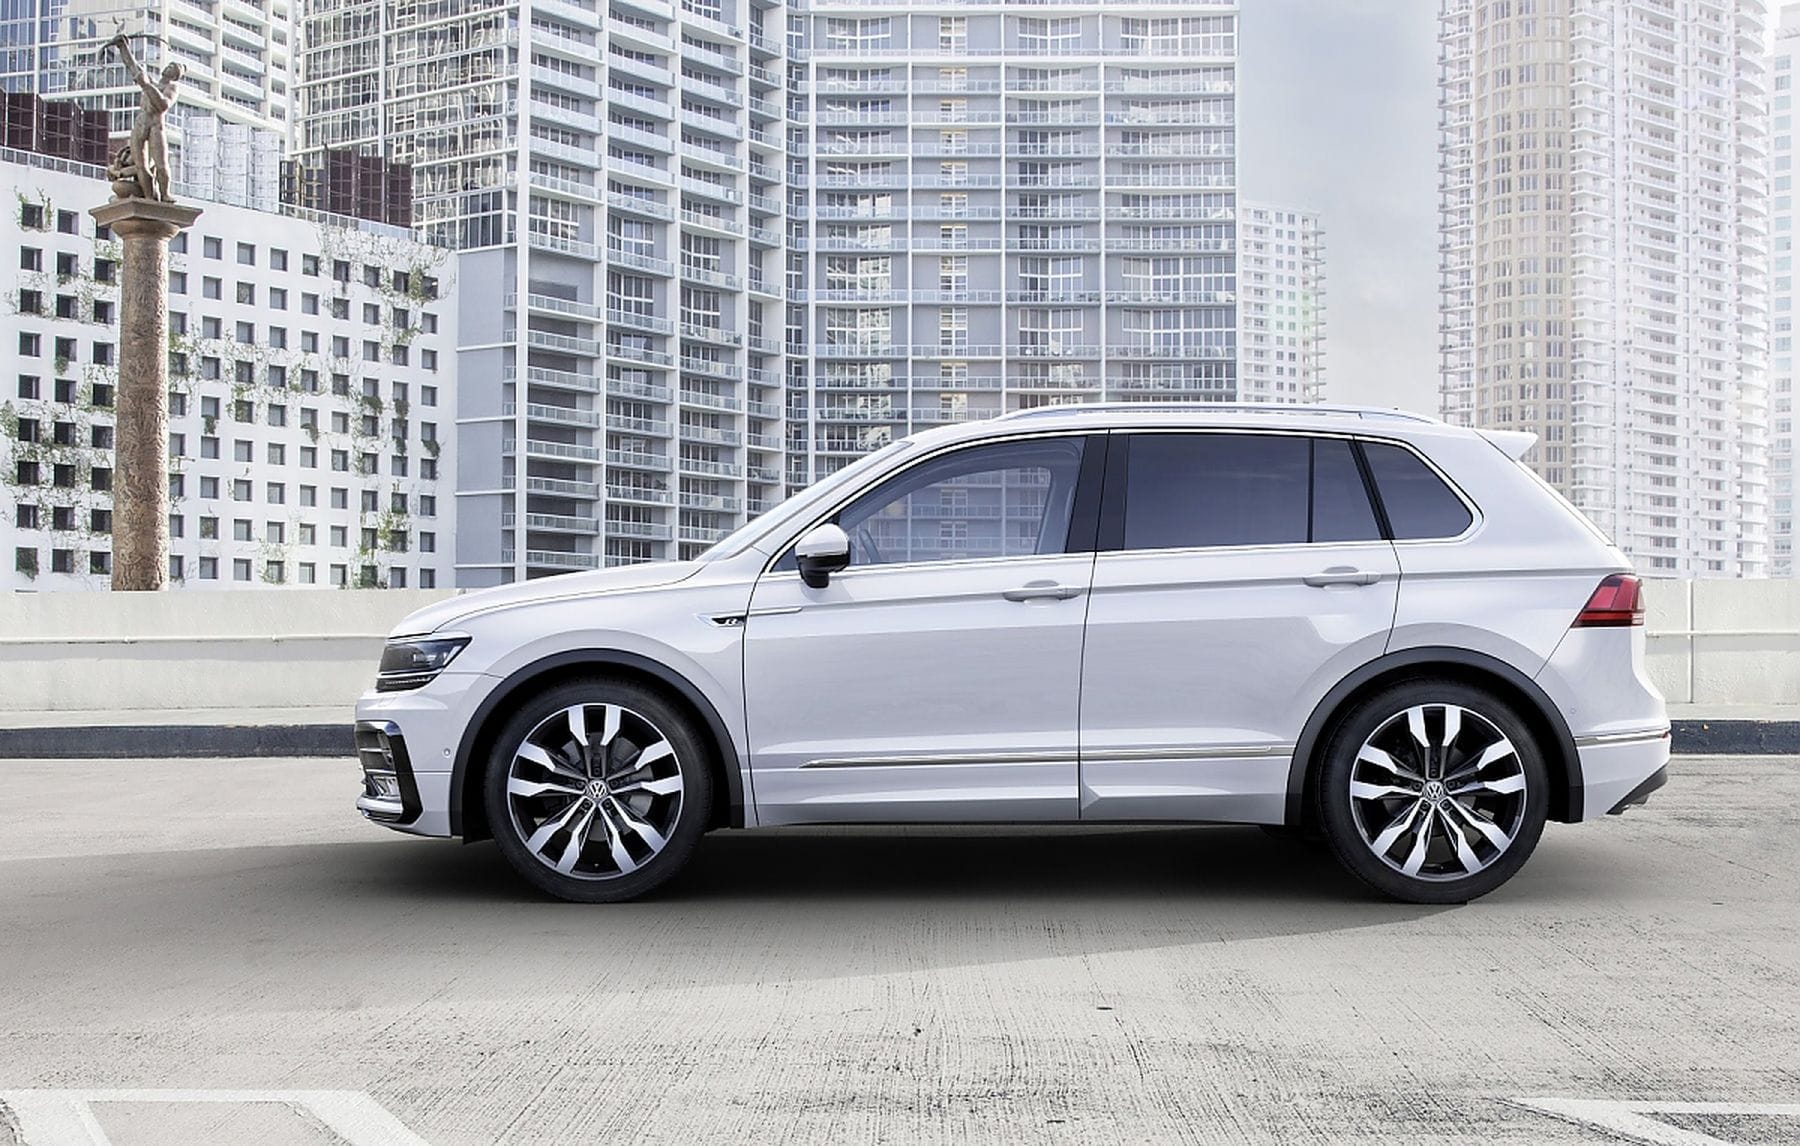 SUV, nächstes Kapitel: Auch der neue VW Tiguan wird sich wieder in die Herzen der Autokäufer fahren.